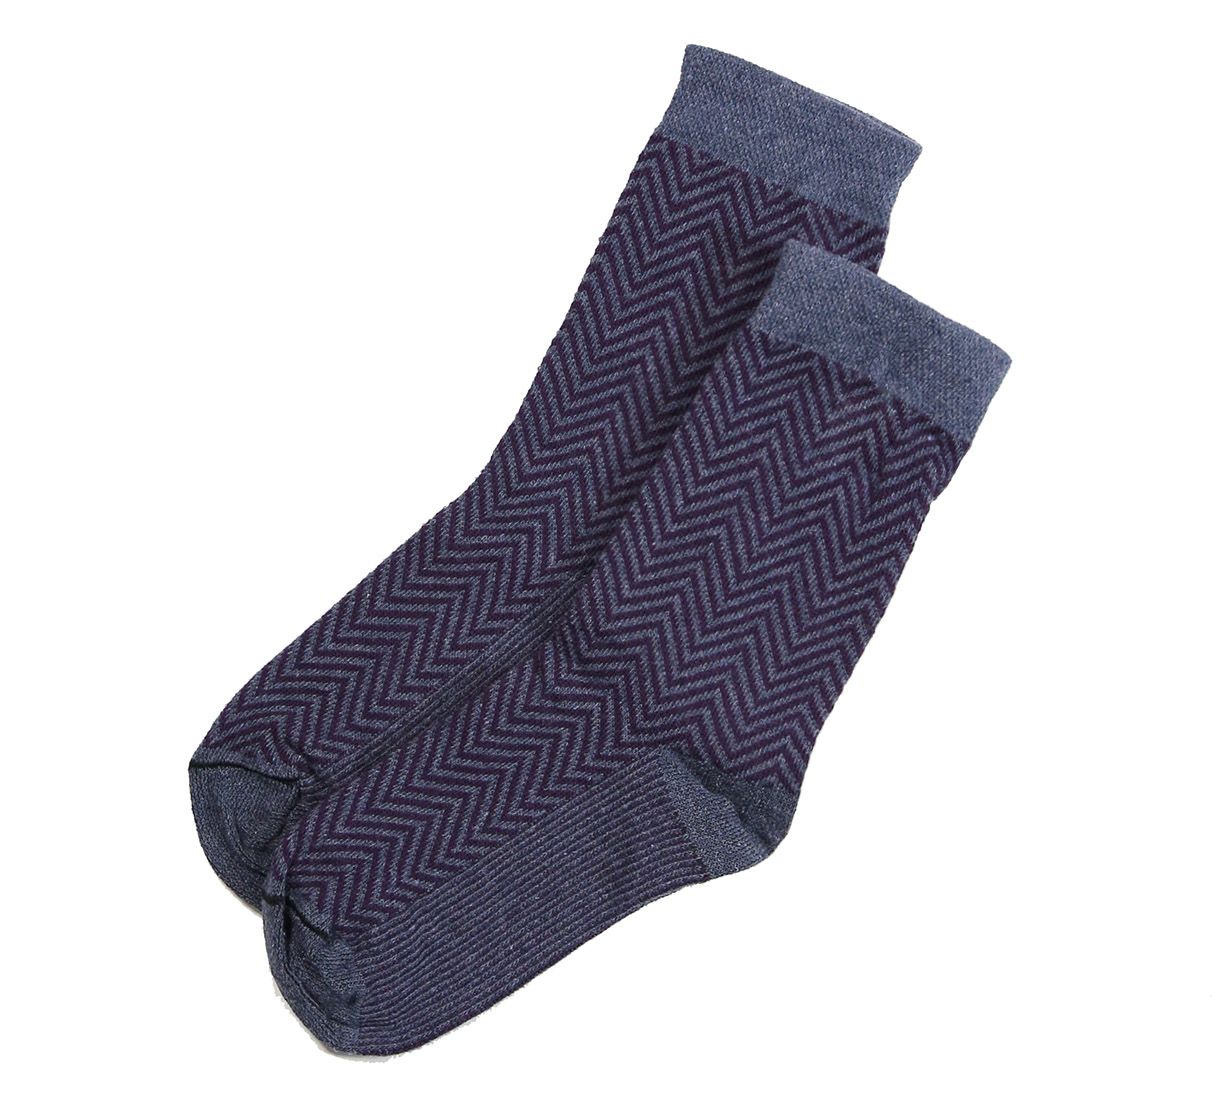 Herringbone Crew socks in Purple Blue  | Patterned Ankle Socks | Playful Sophisticated Legwear at Between the Sheets